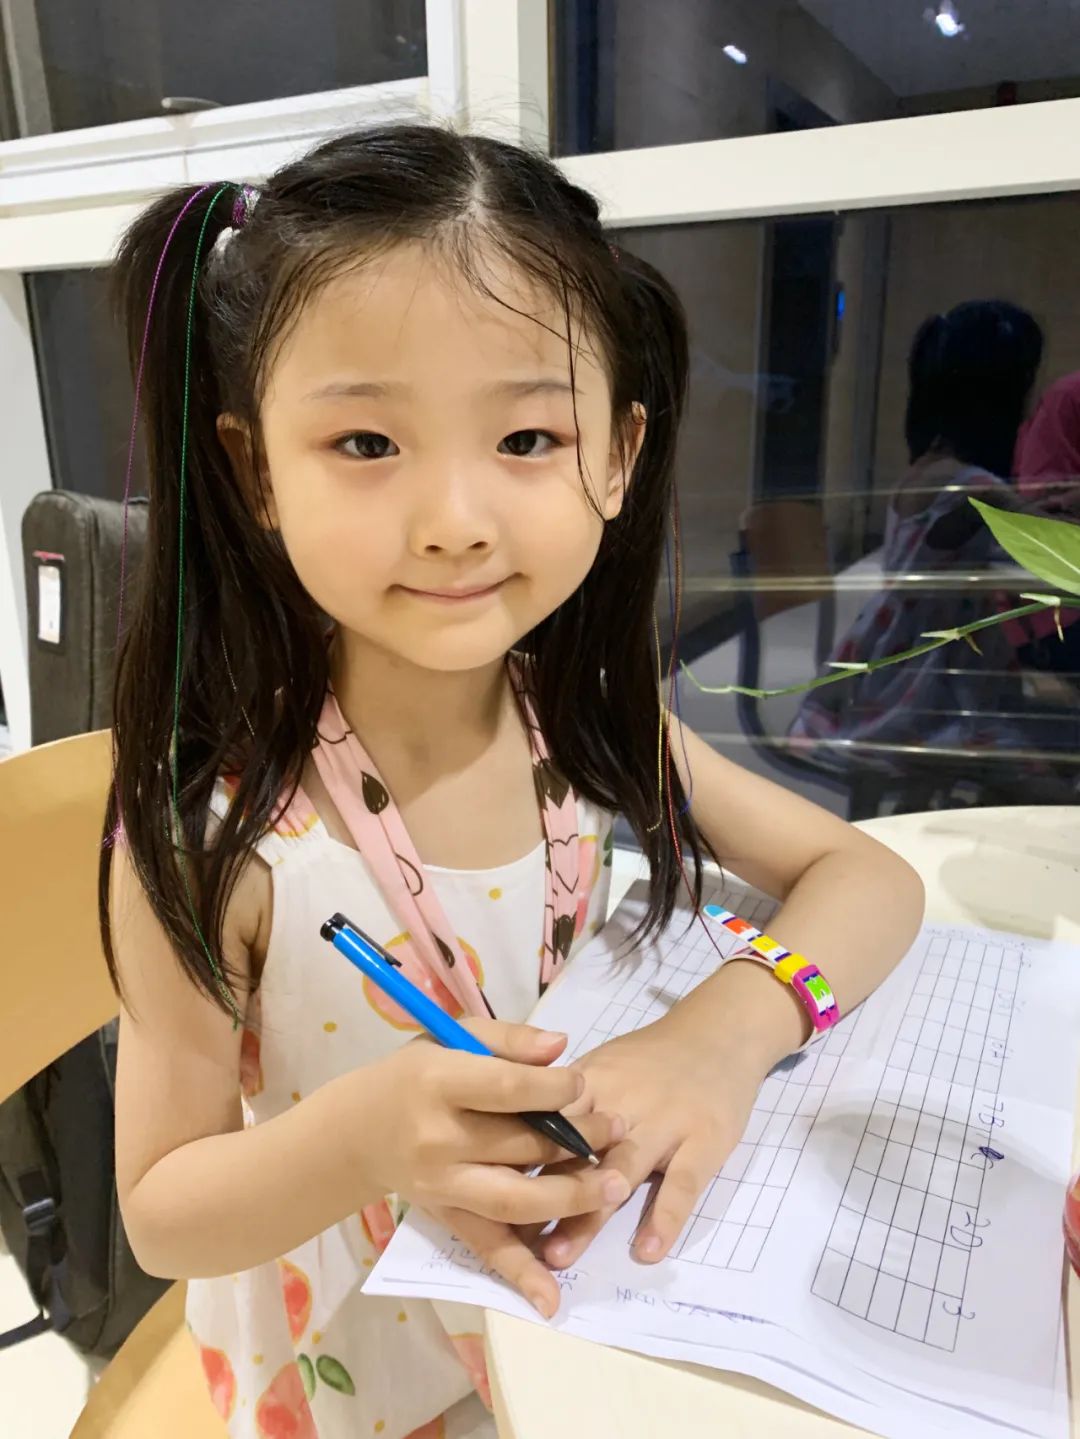 6岁中国小女孩火爆外网,外国大神为她伴奏,超模bella求认识,网友:又骗